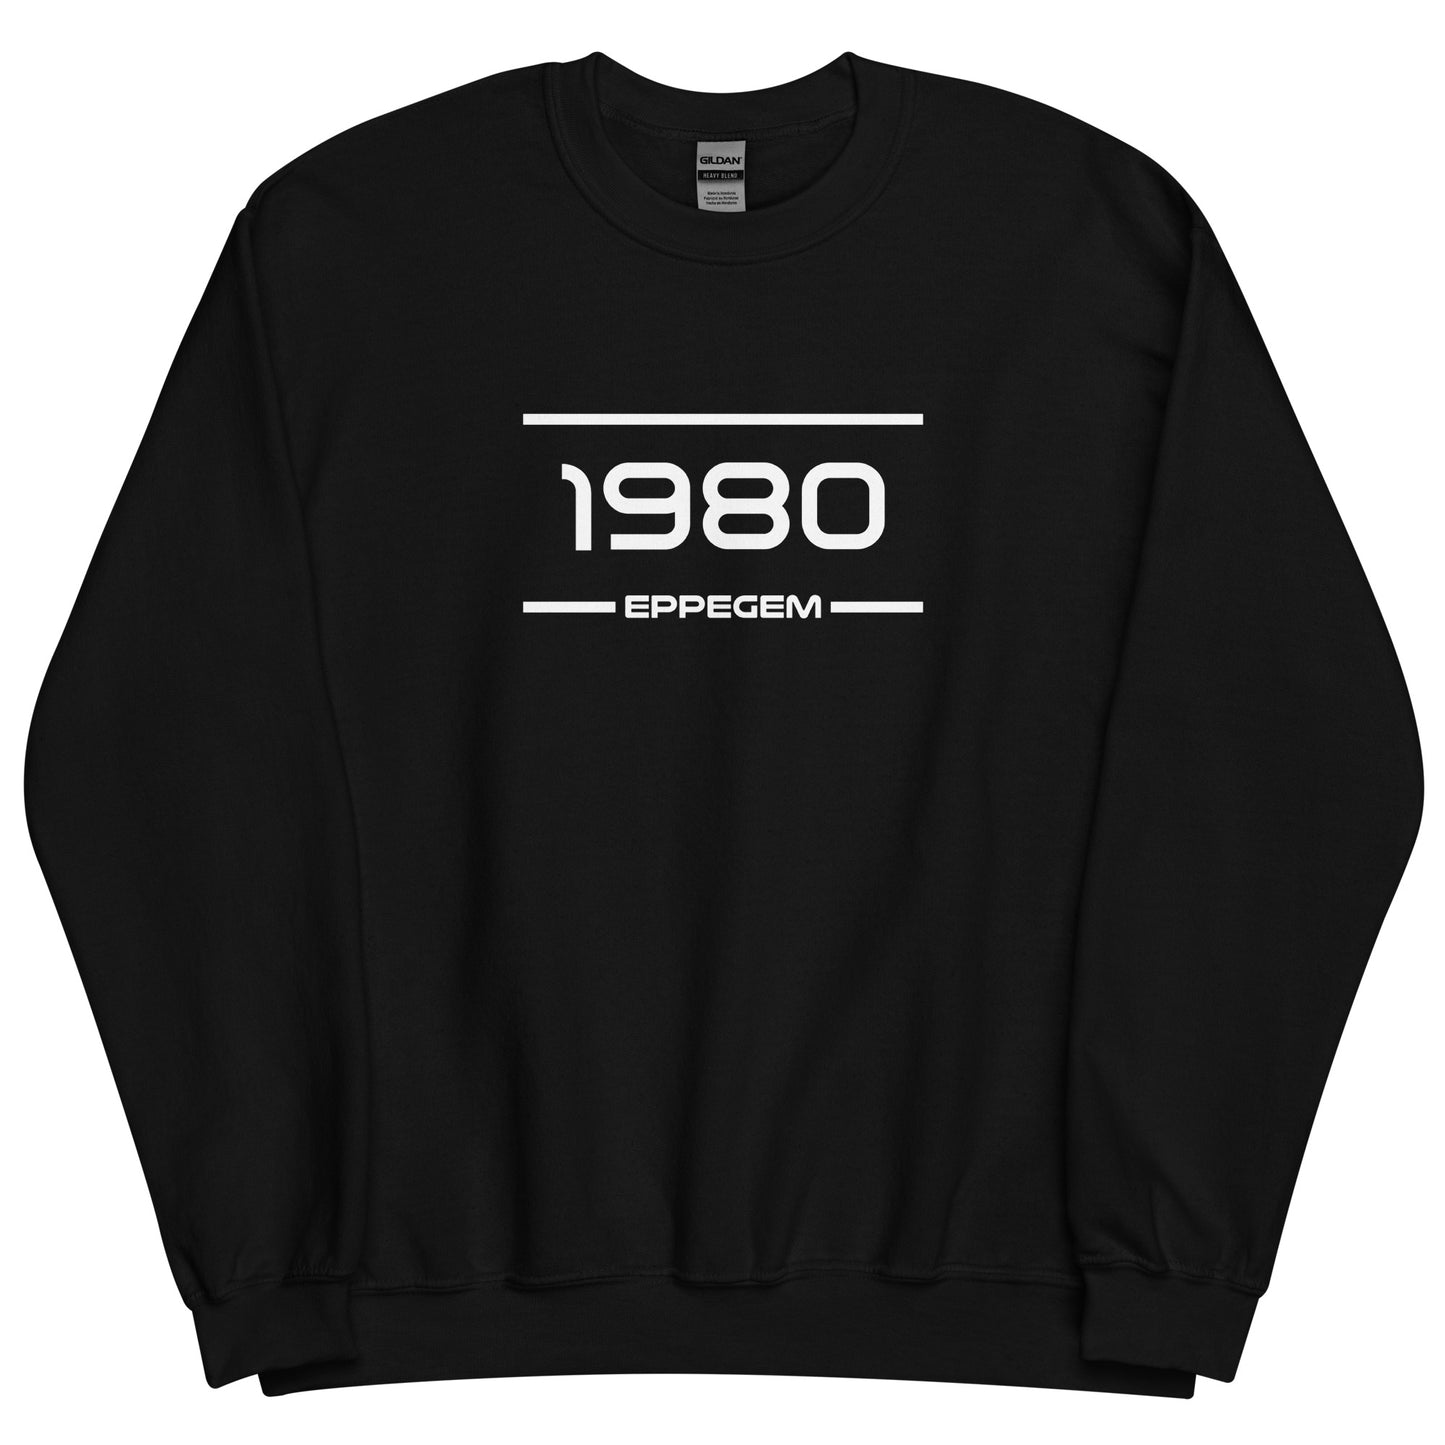 Sweater - 1980 - Eppegem (M/V)